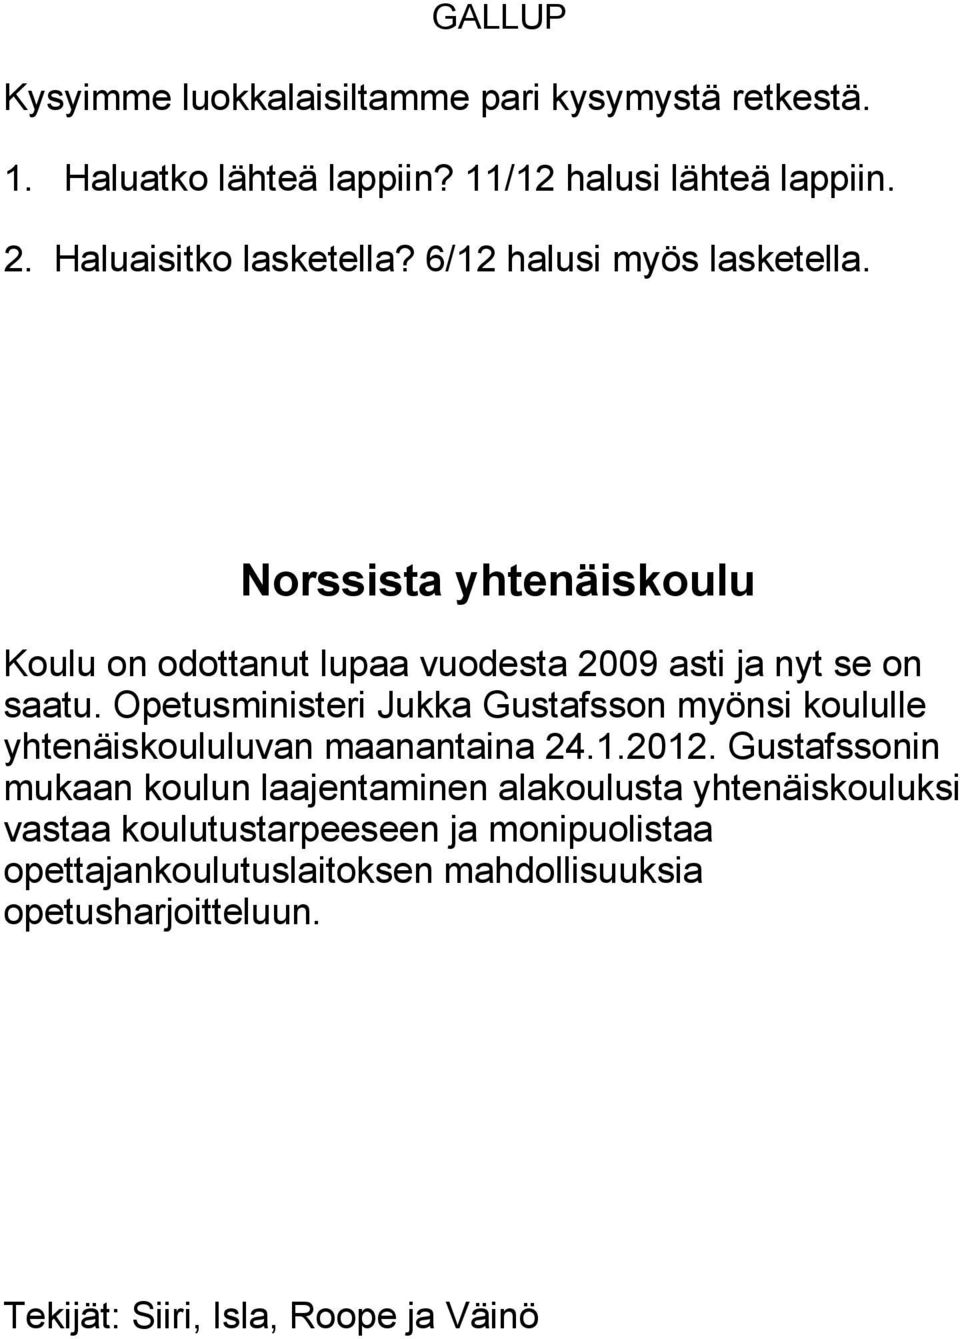 Opetusministeri Jukka Gustafsson myönsi koululle yhtenäiskoululuvan maanantaina 24.1.2012.